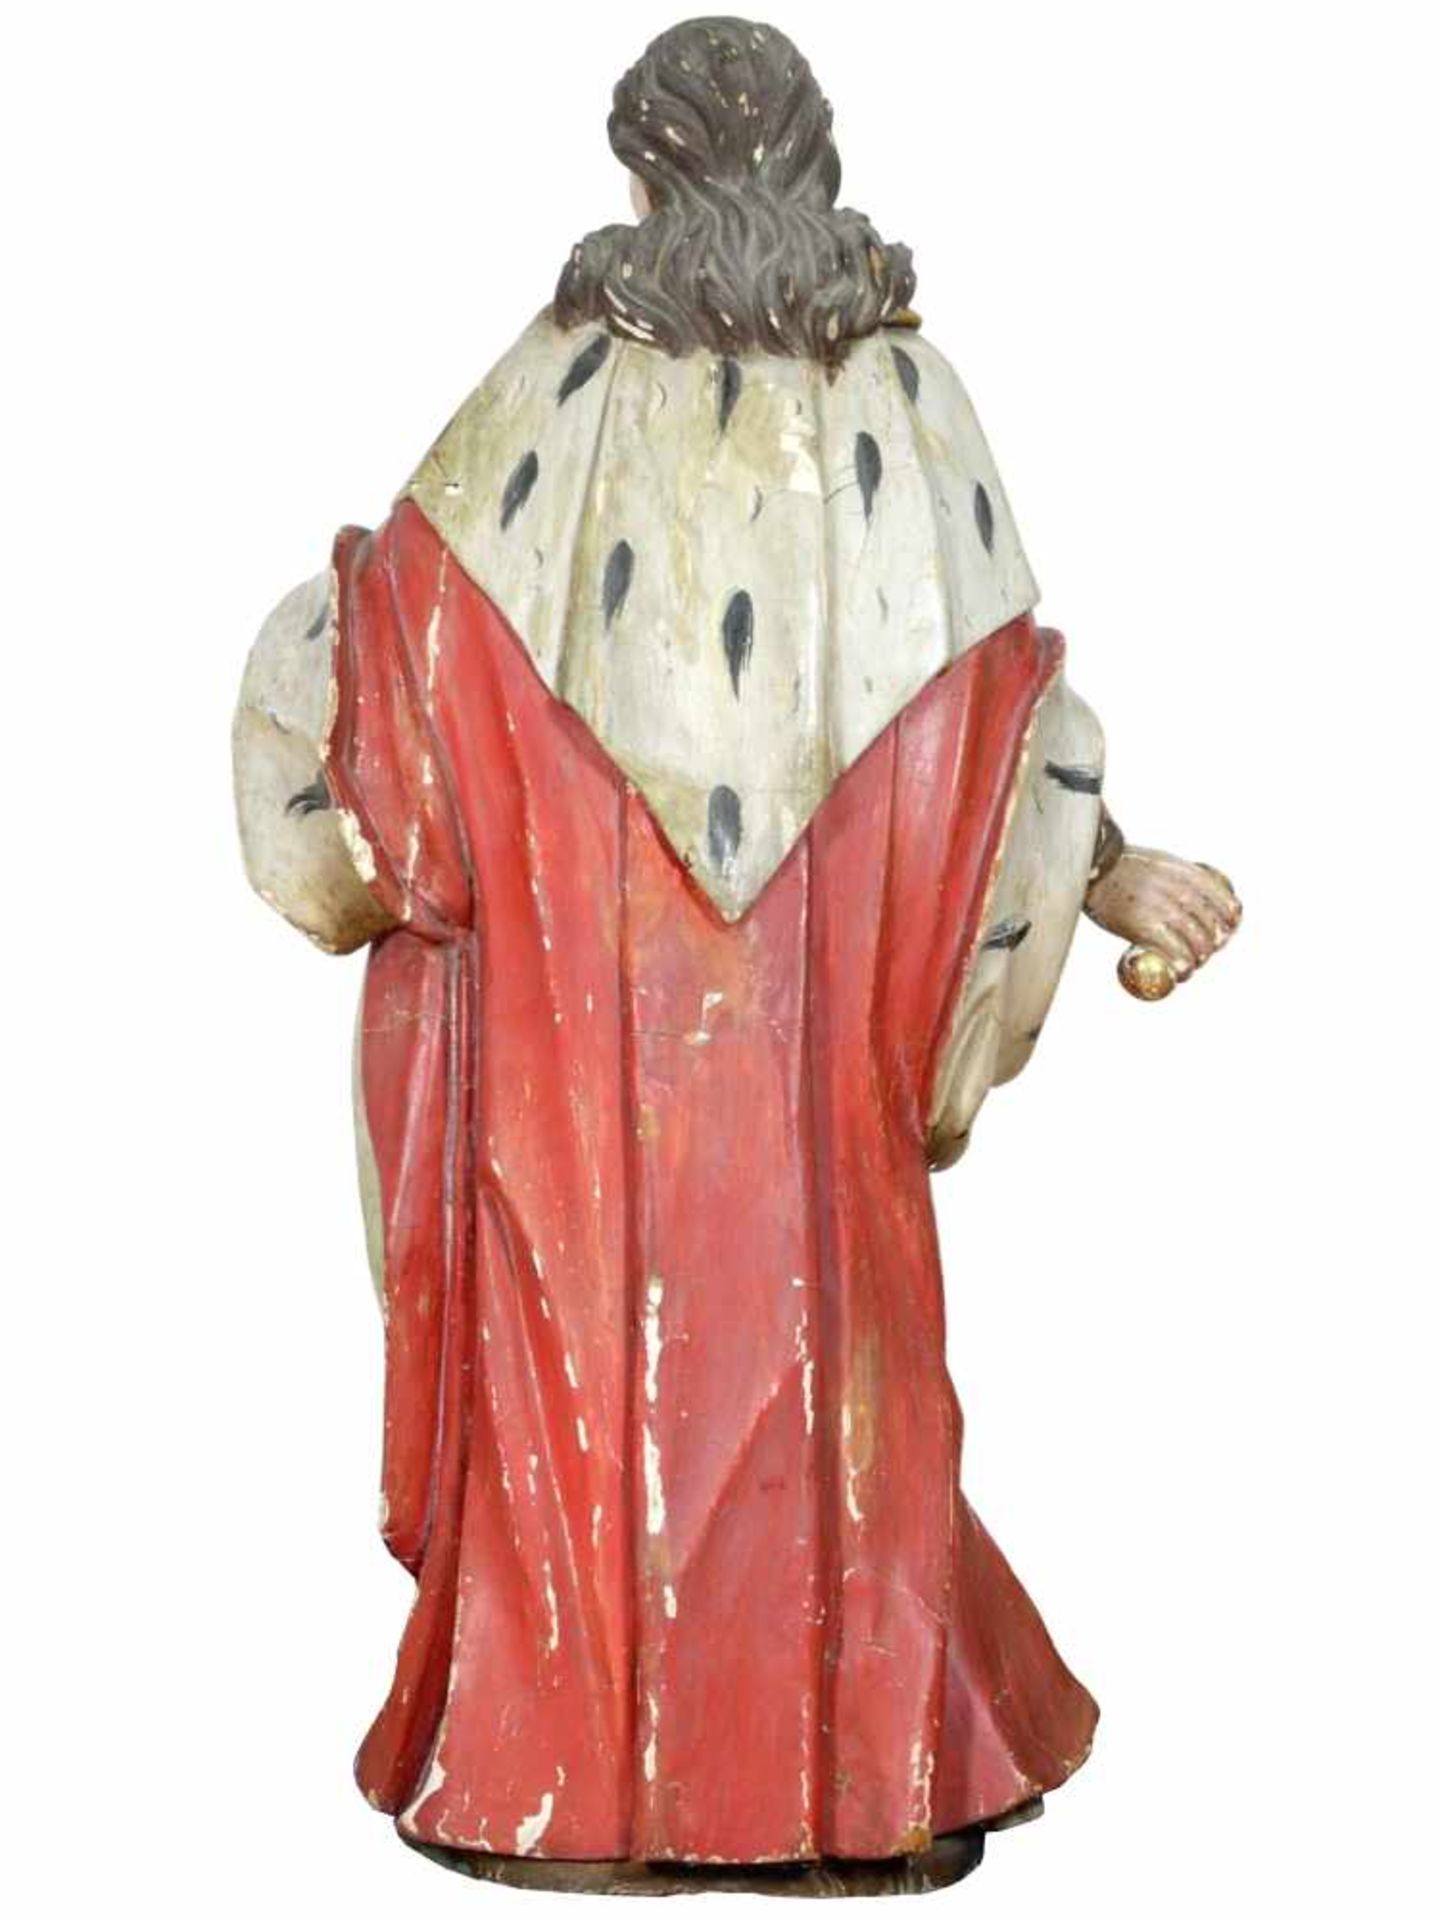 Holz Skulptur Heiliger Oswald von Northumbria 19. Jhd.Der Heilige wird seiner tradierten - Image 3 of 10